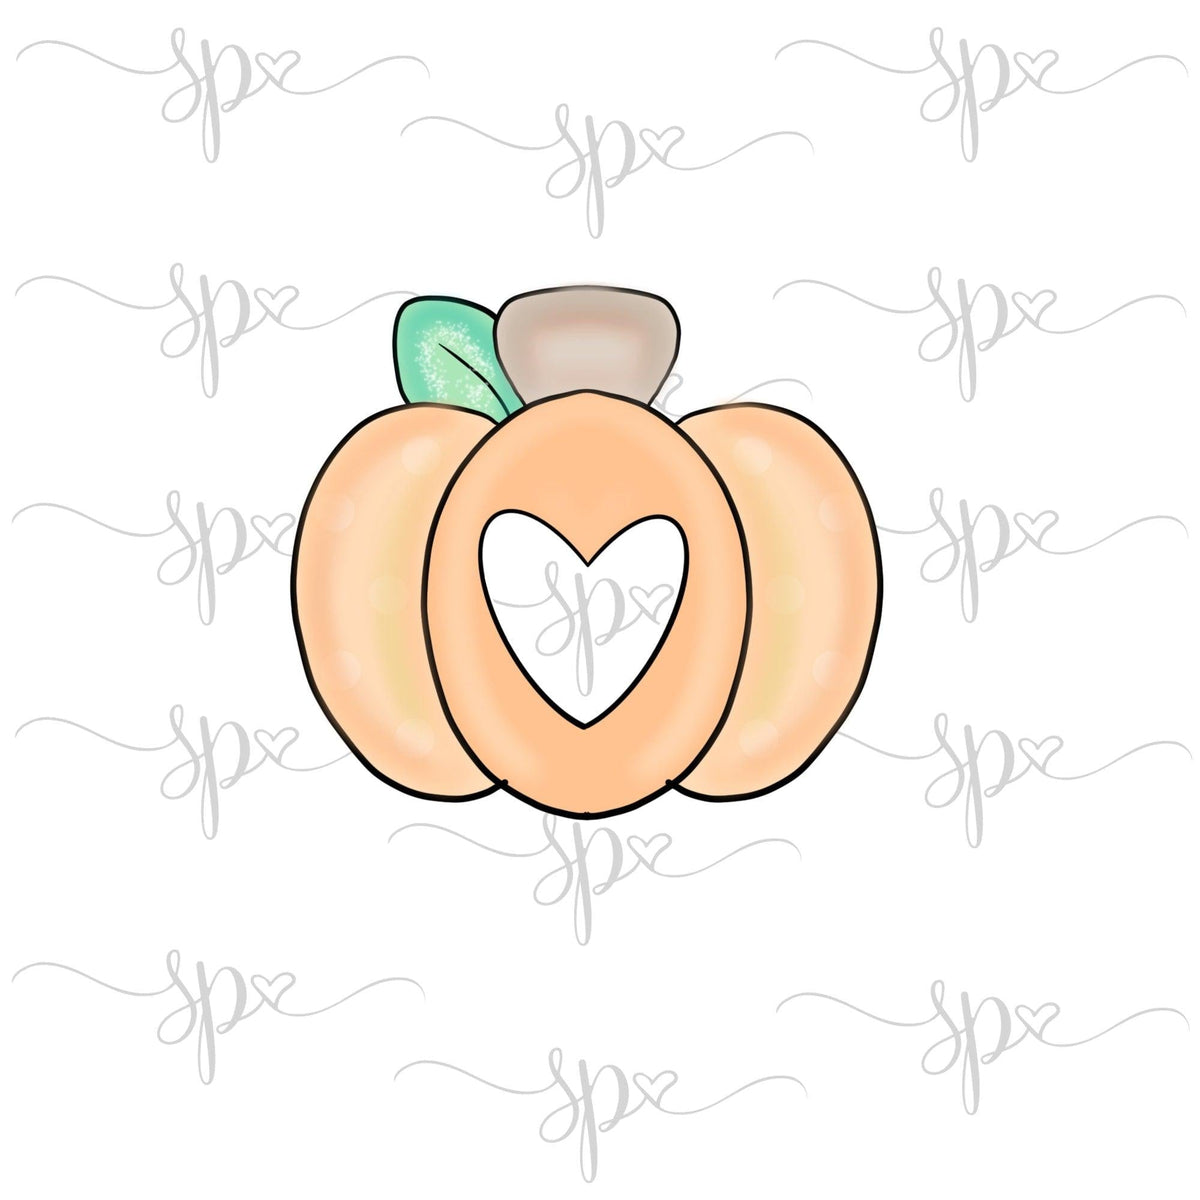 Cutout Pumpkin Cookie Cutter - Sweetleigh 